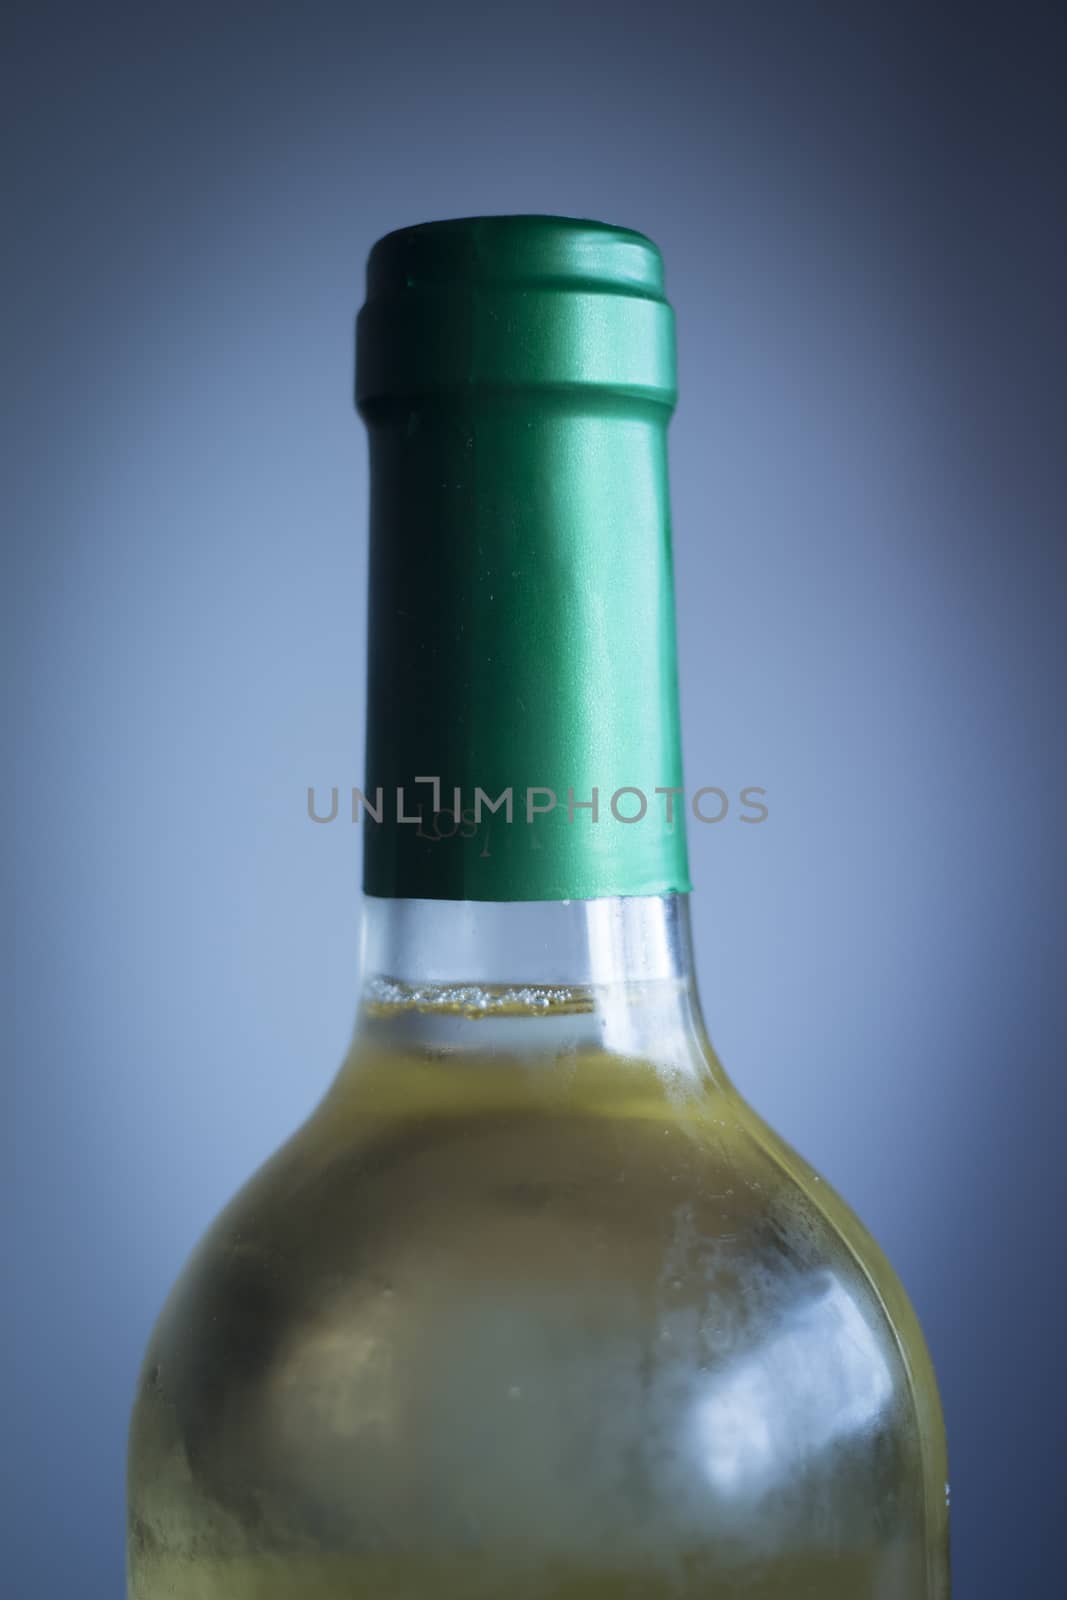 White wine bottle studio isolated close-up on plain blue background color photo.